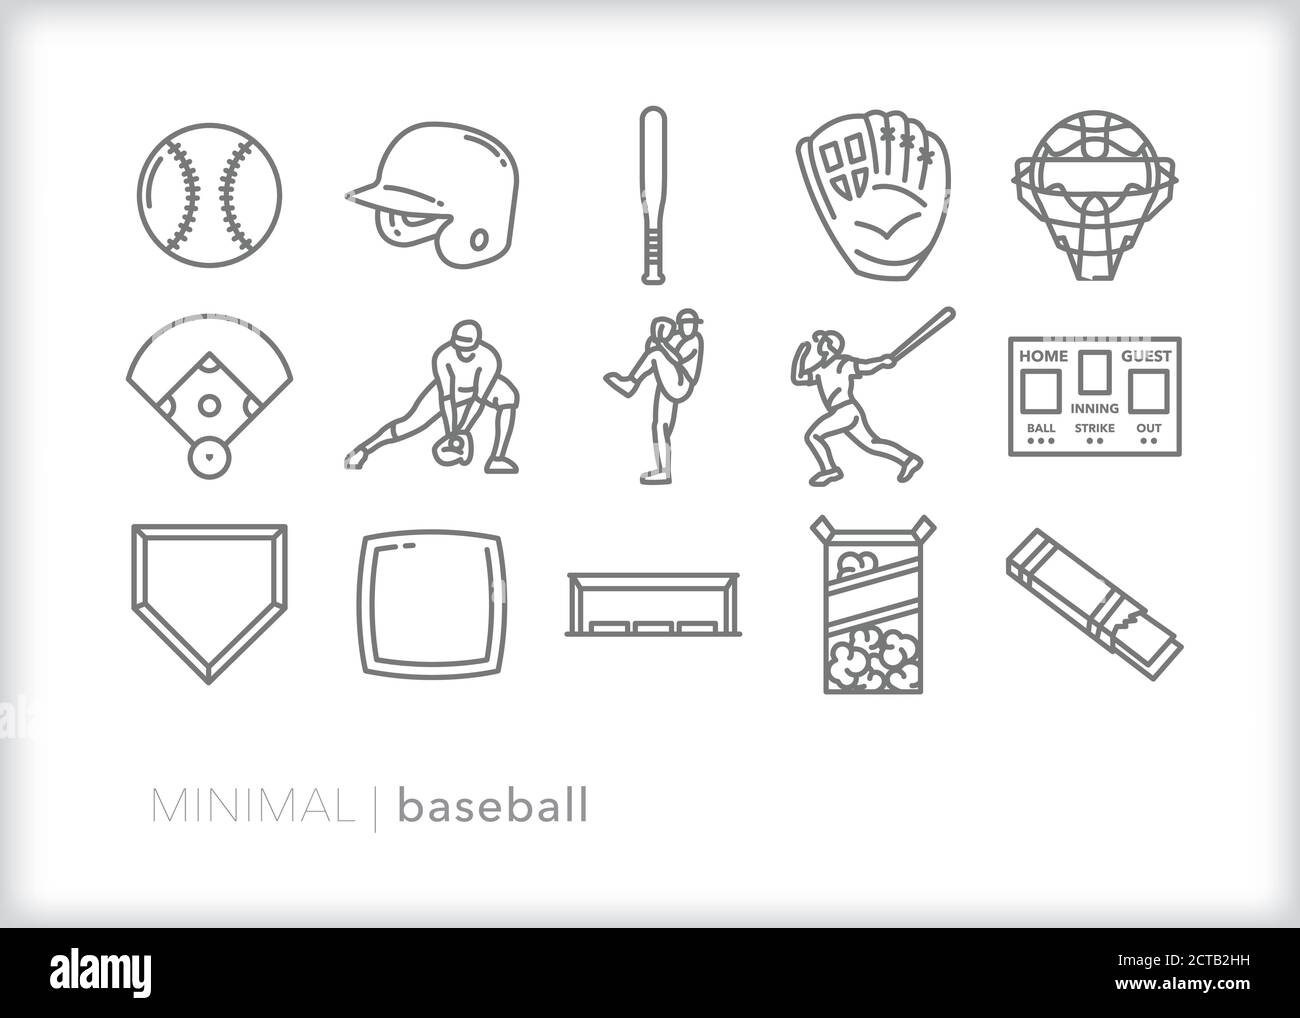 Ensemble d'icônes de la ligne de jeu de baseball, y compris des équipements sportifs, des positions de joueur et des rafraîchissements de fan Illustration de Vecteur